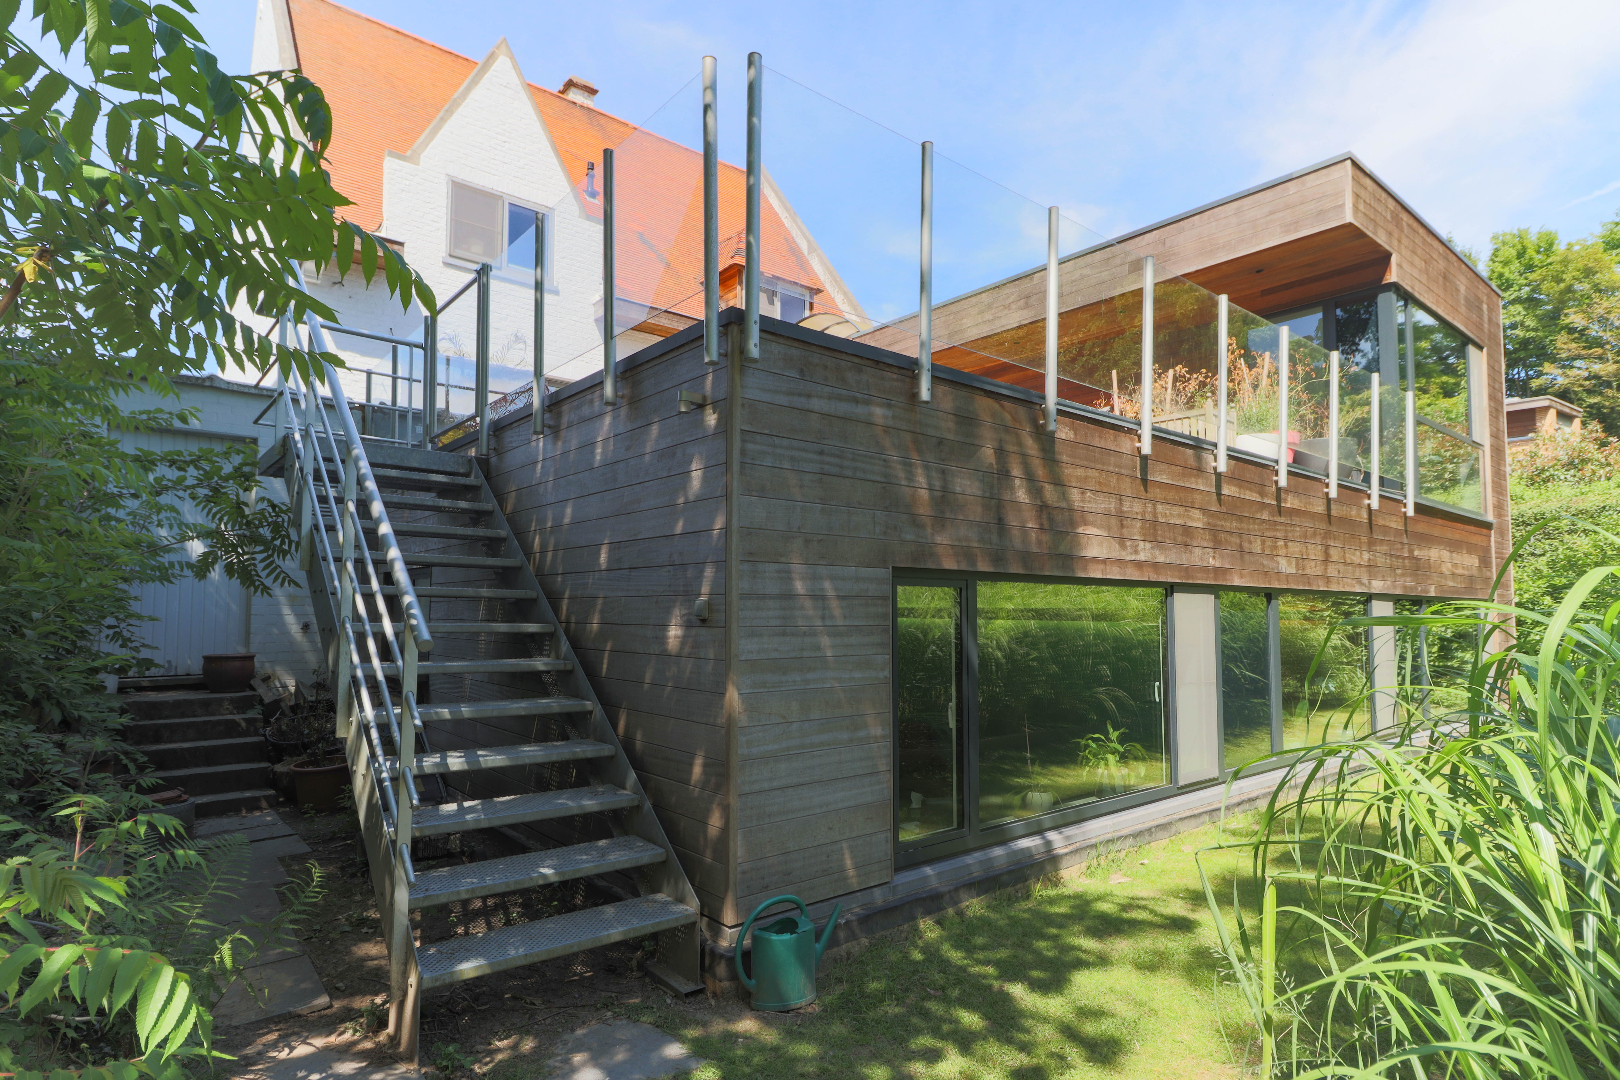 Charmante stijlvolle villa met ruime praktijk op een centrale topligging te Marke / Kortrijk !